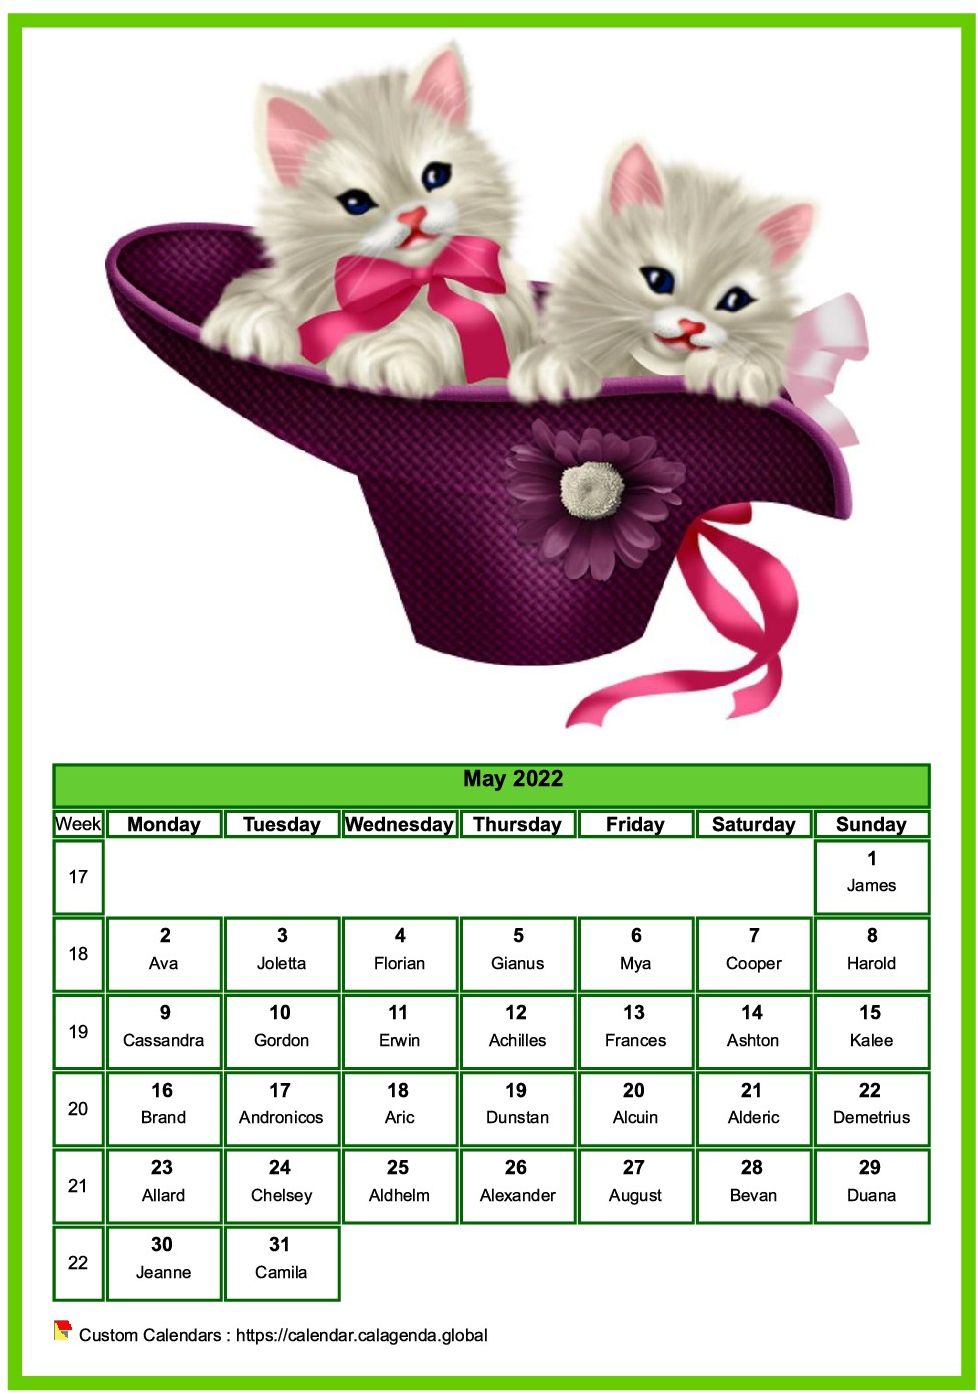 Calendar May 2022 cats